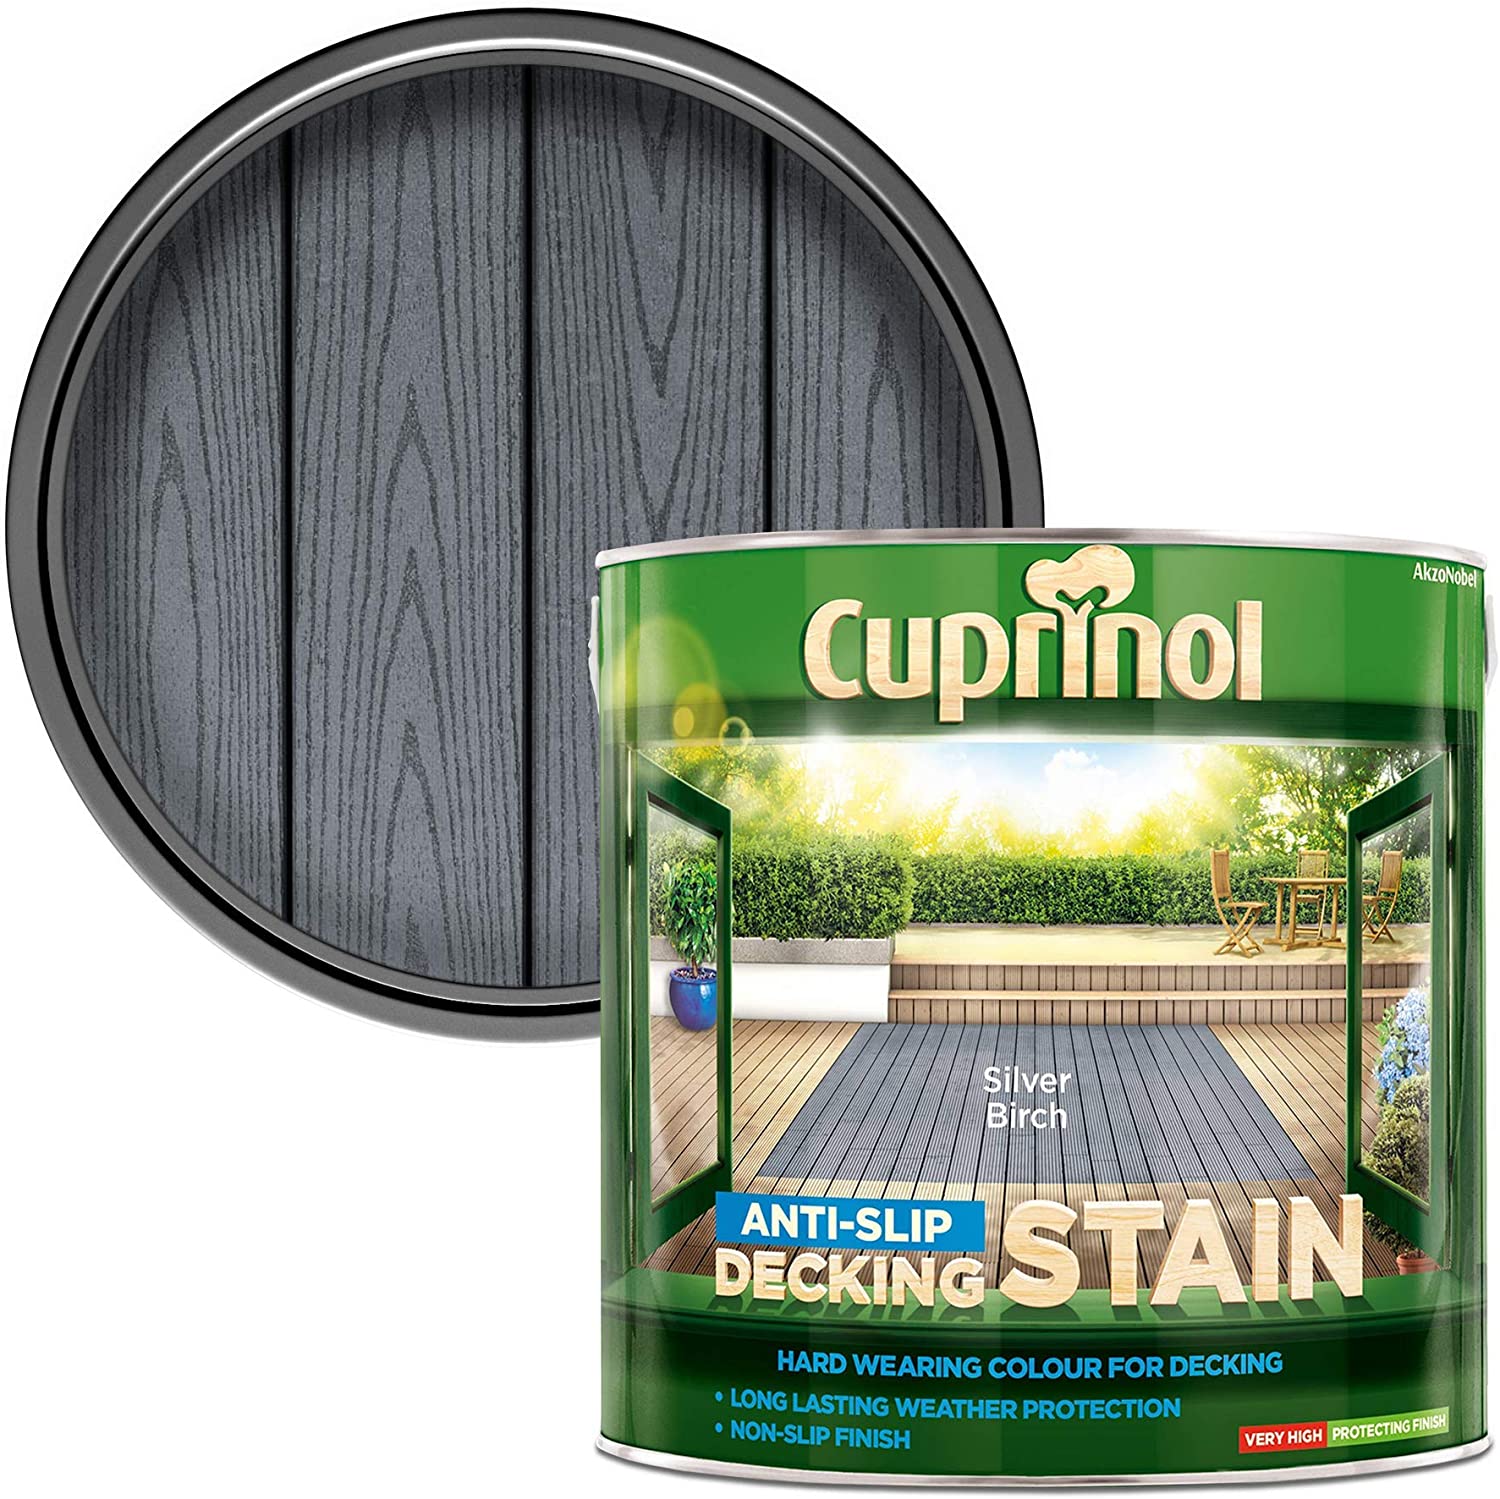 Cuprinol-Anti-Slip-Decking-Stain-Silver-Birch-2.5L